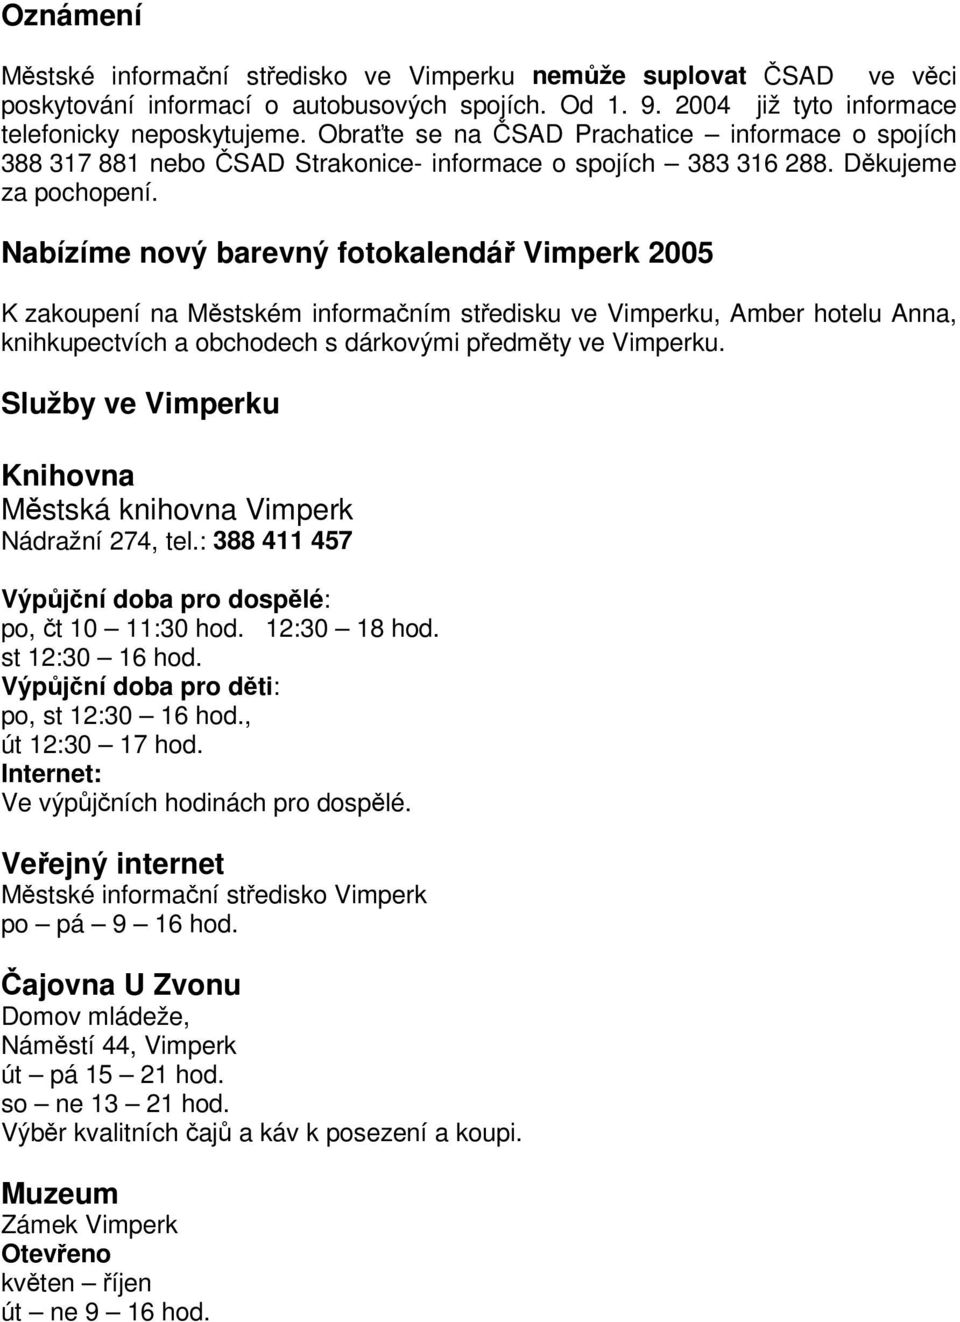 Nabízíme nový barevný fotokalendá Vimperk 2005 K zakoupení na Mstském informaním stedisku ve Vimperku, Amber hotelu Anna, knihkupectvích a obchodech s dárkovými pedmty ve Vimperku.